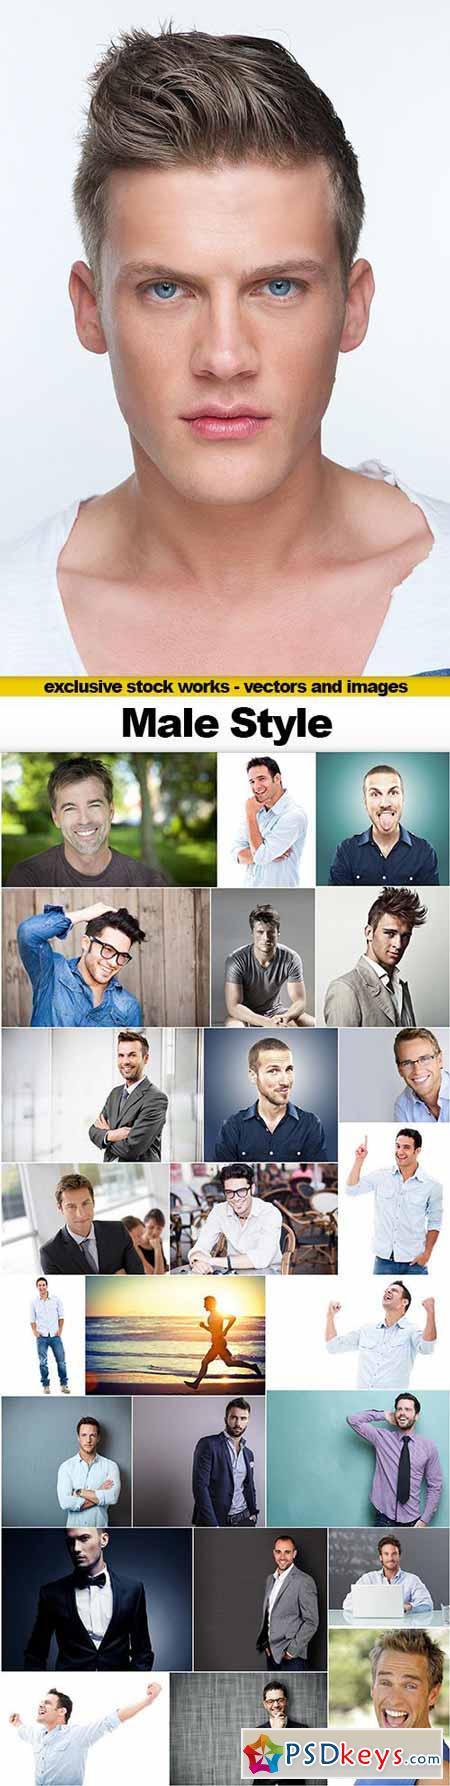 Male Style - 25x UHQ JPEG